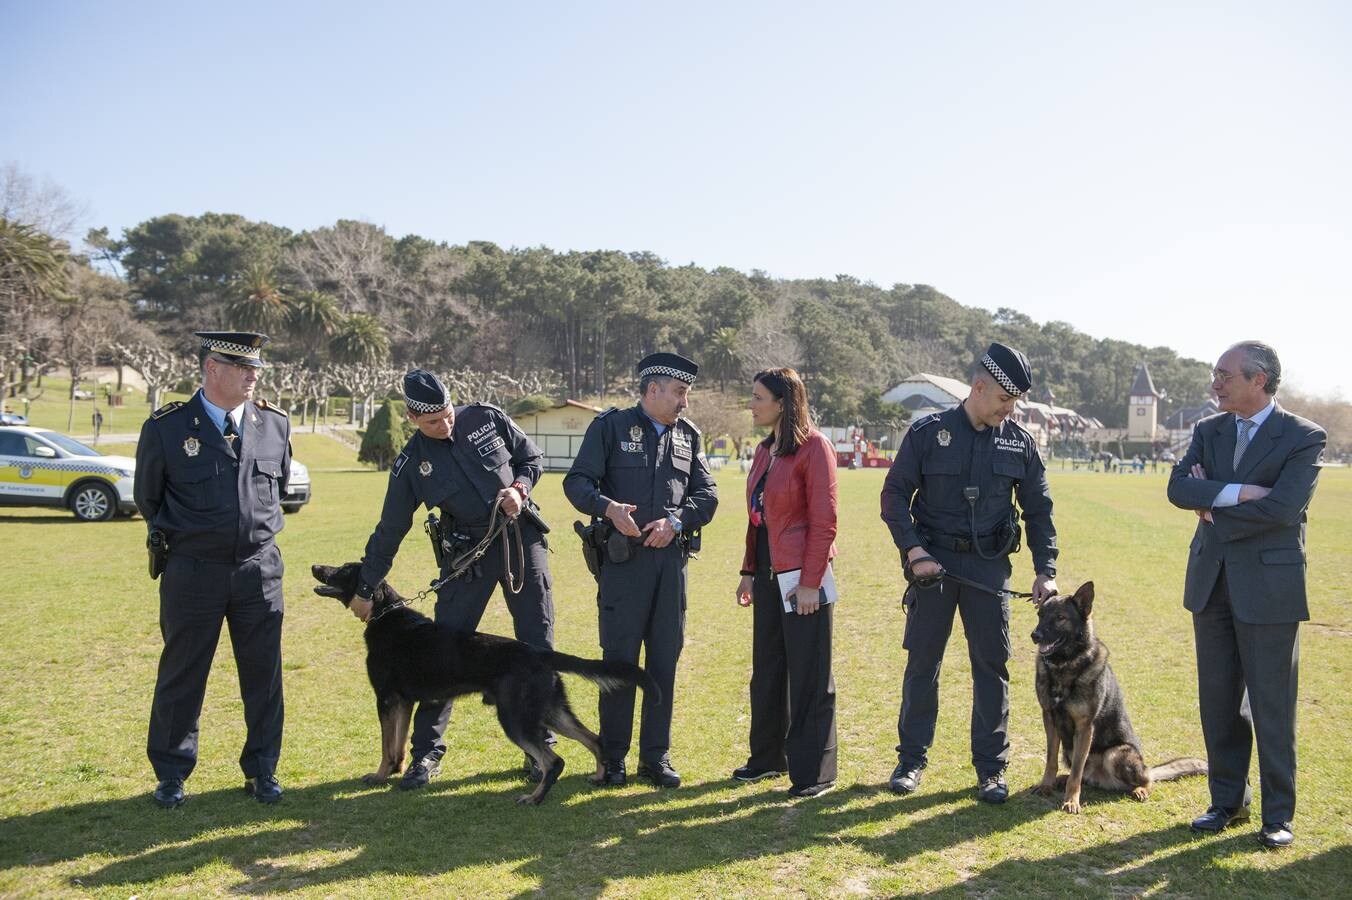 Presentación de la unidad canina de la Policía Local de Santander